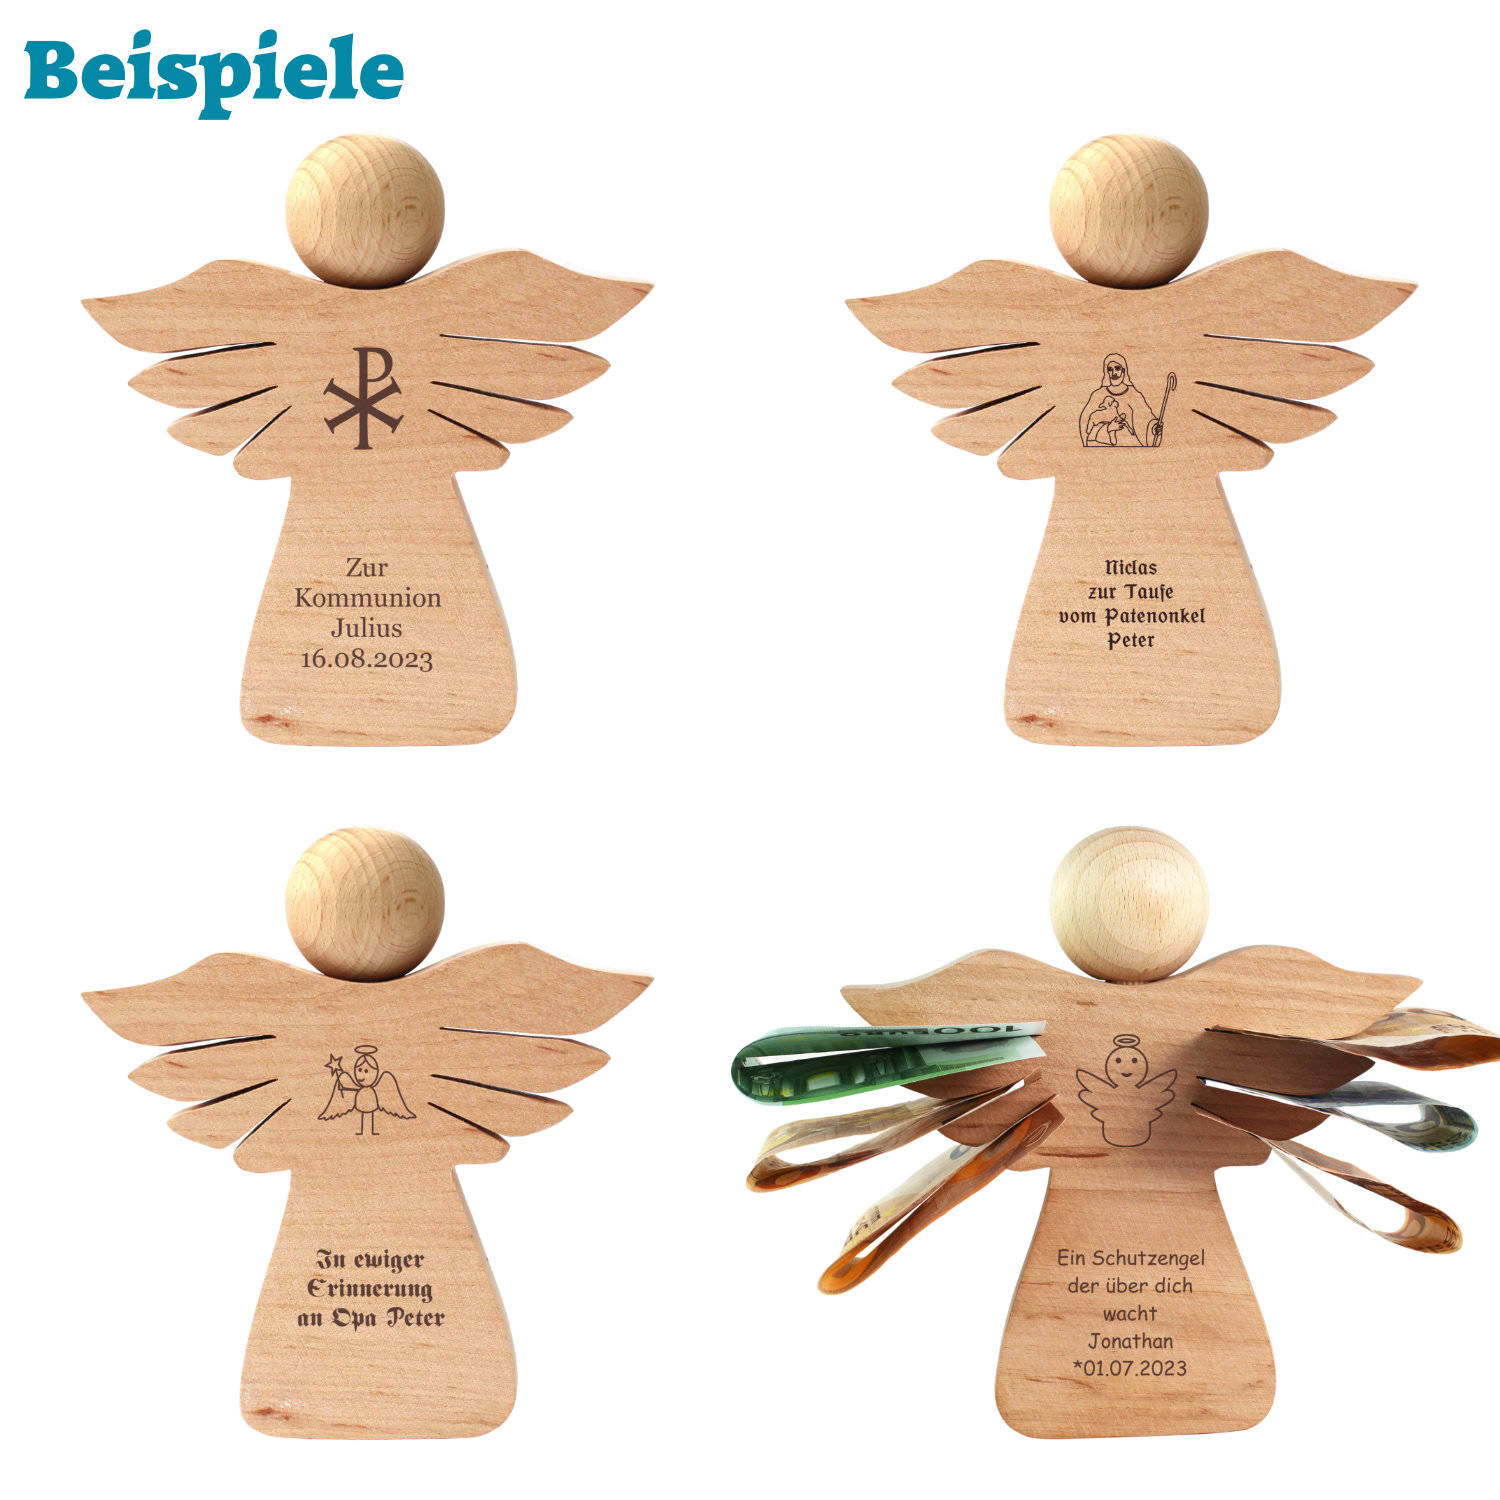 Engel aus Holz mit Gravur zur Geburt - personalisiert - Engel aus Holz